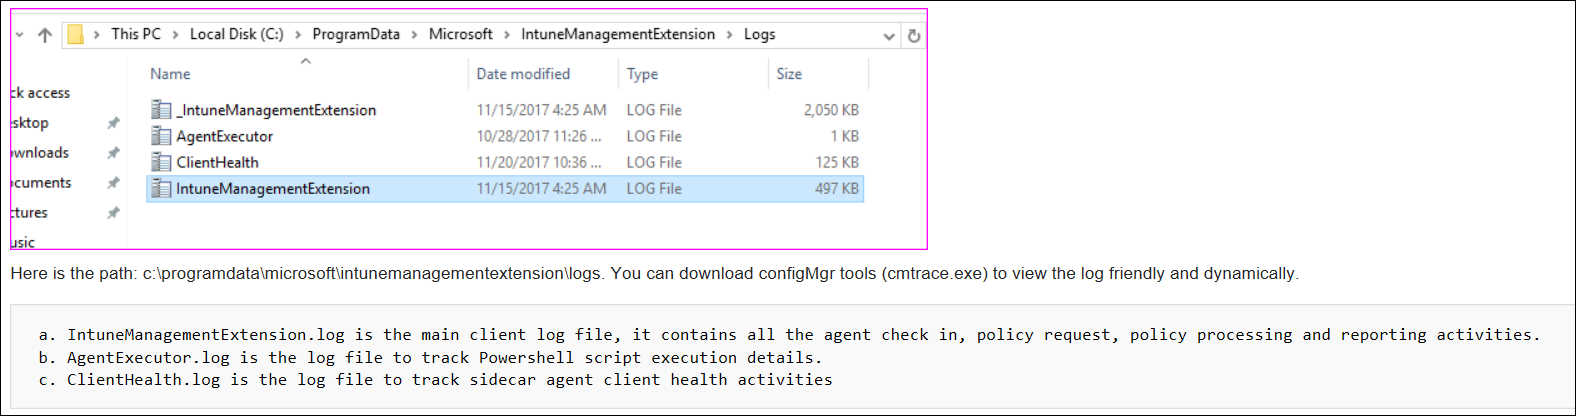 Captura de tela dos logs do Agente no computador cliente.